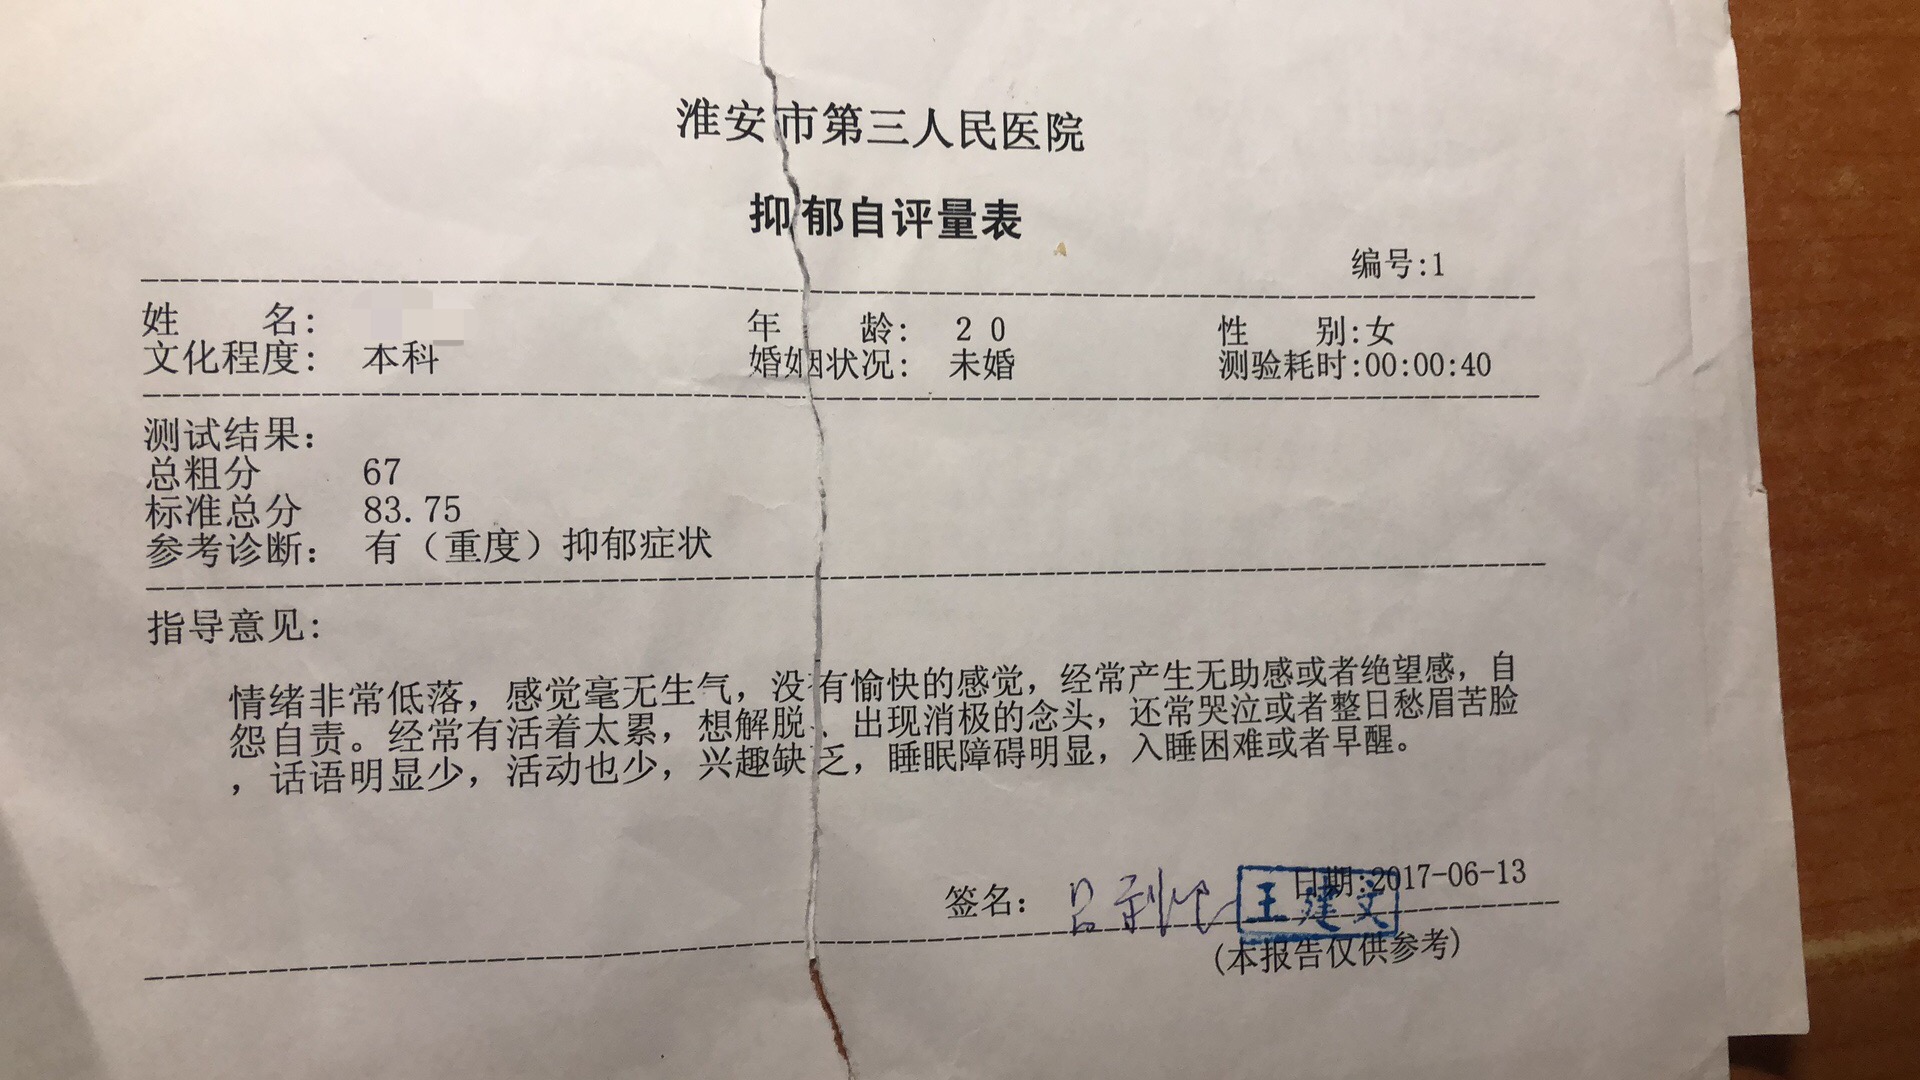 江苏一高校副校长被举报出轨女生 省纪委介入调查